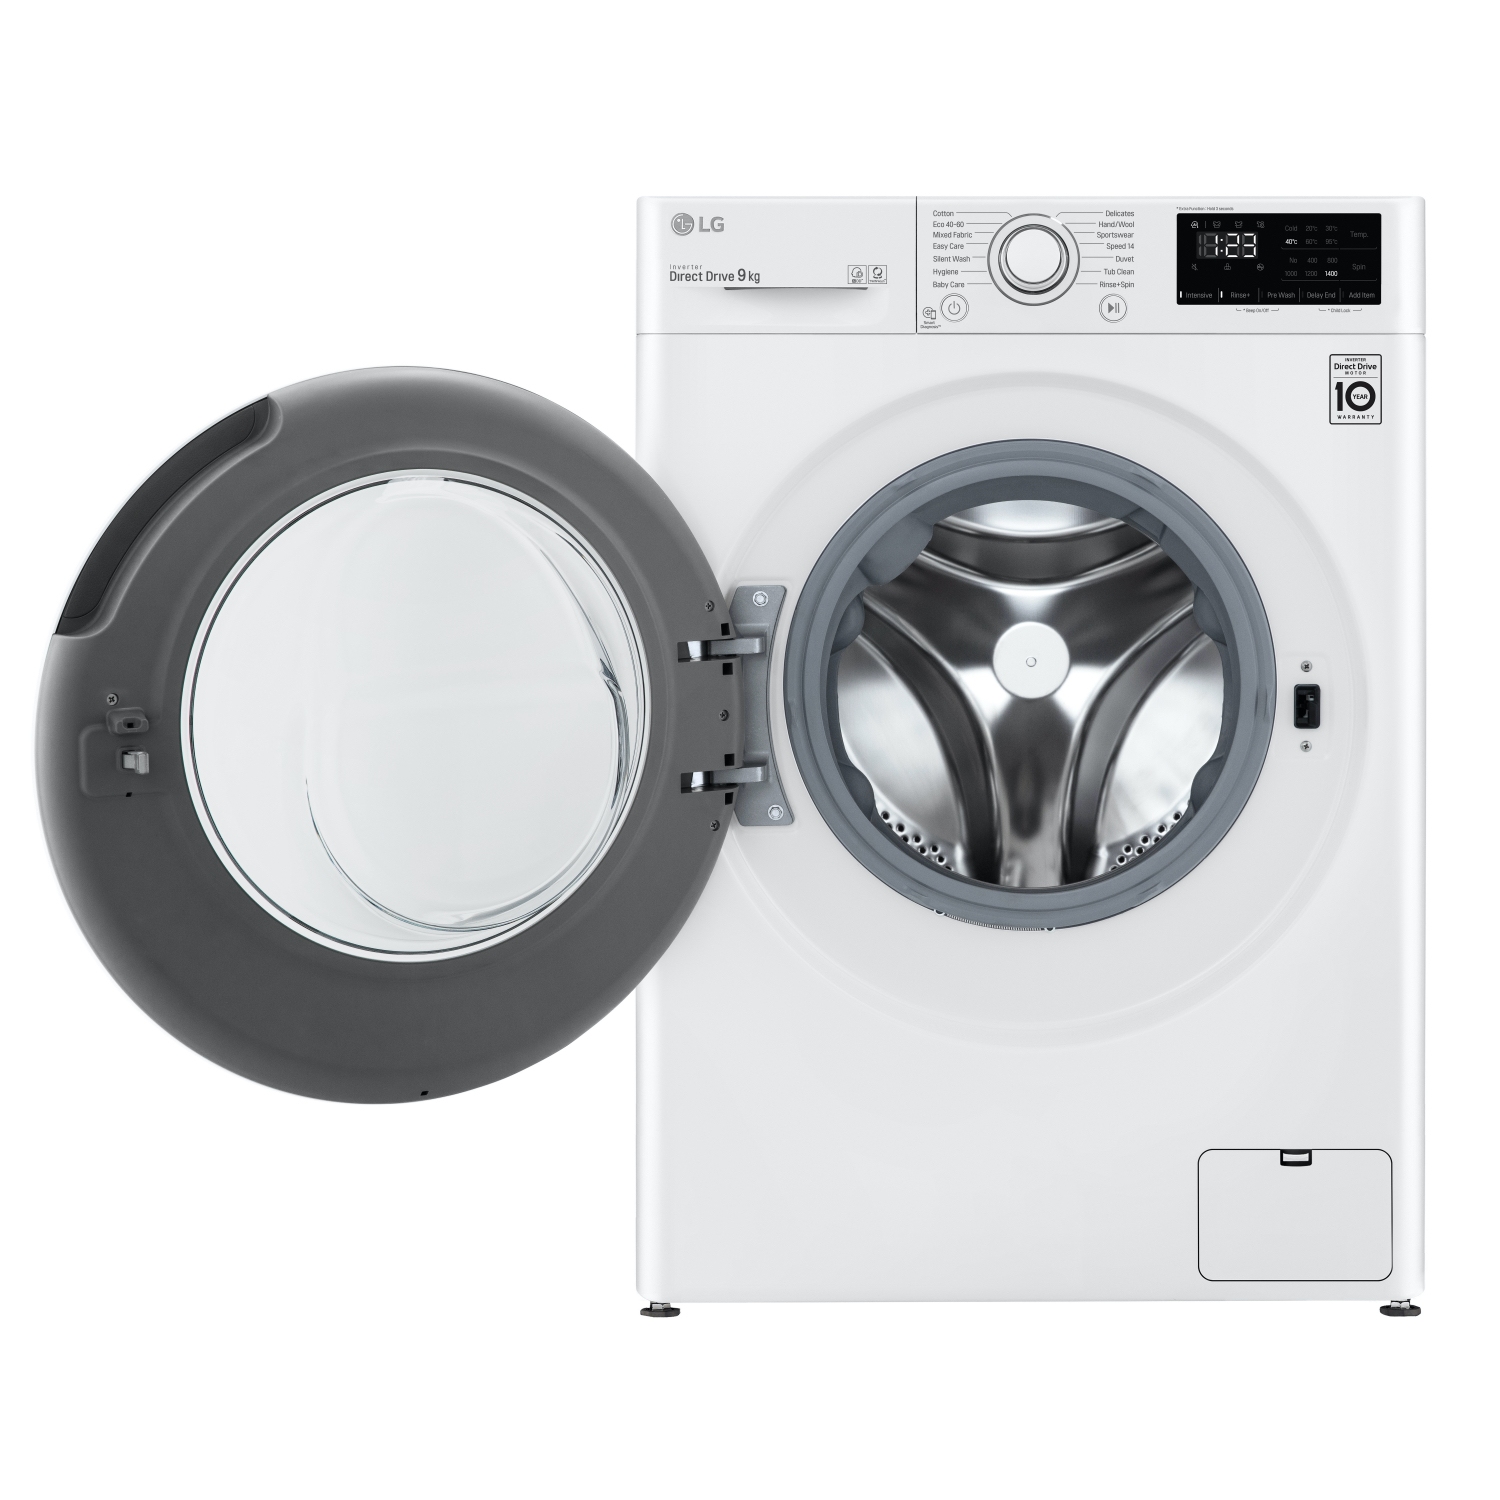 LG F4V309WNW 9kg 1400 Spin Washing Machine - White - 6